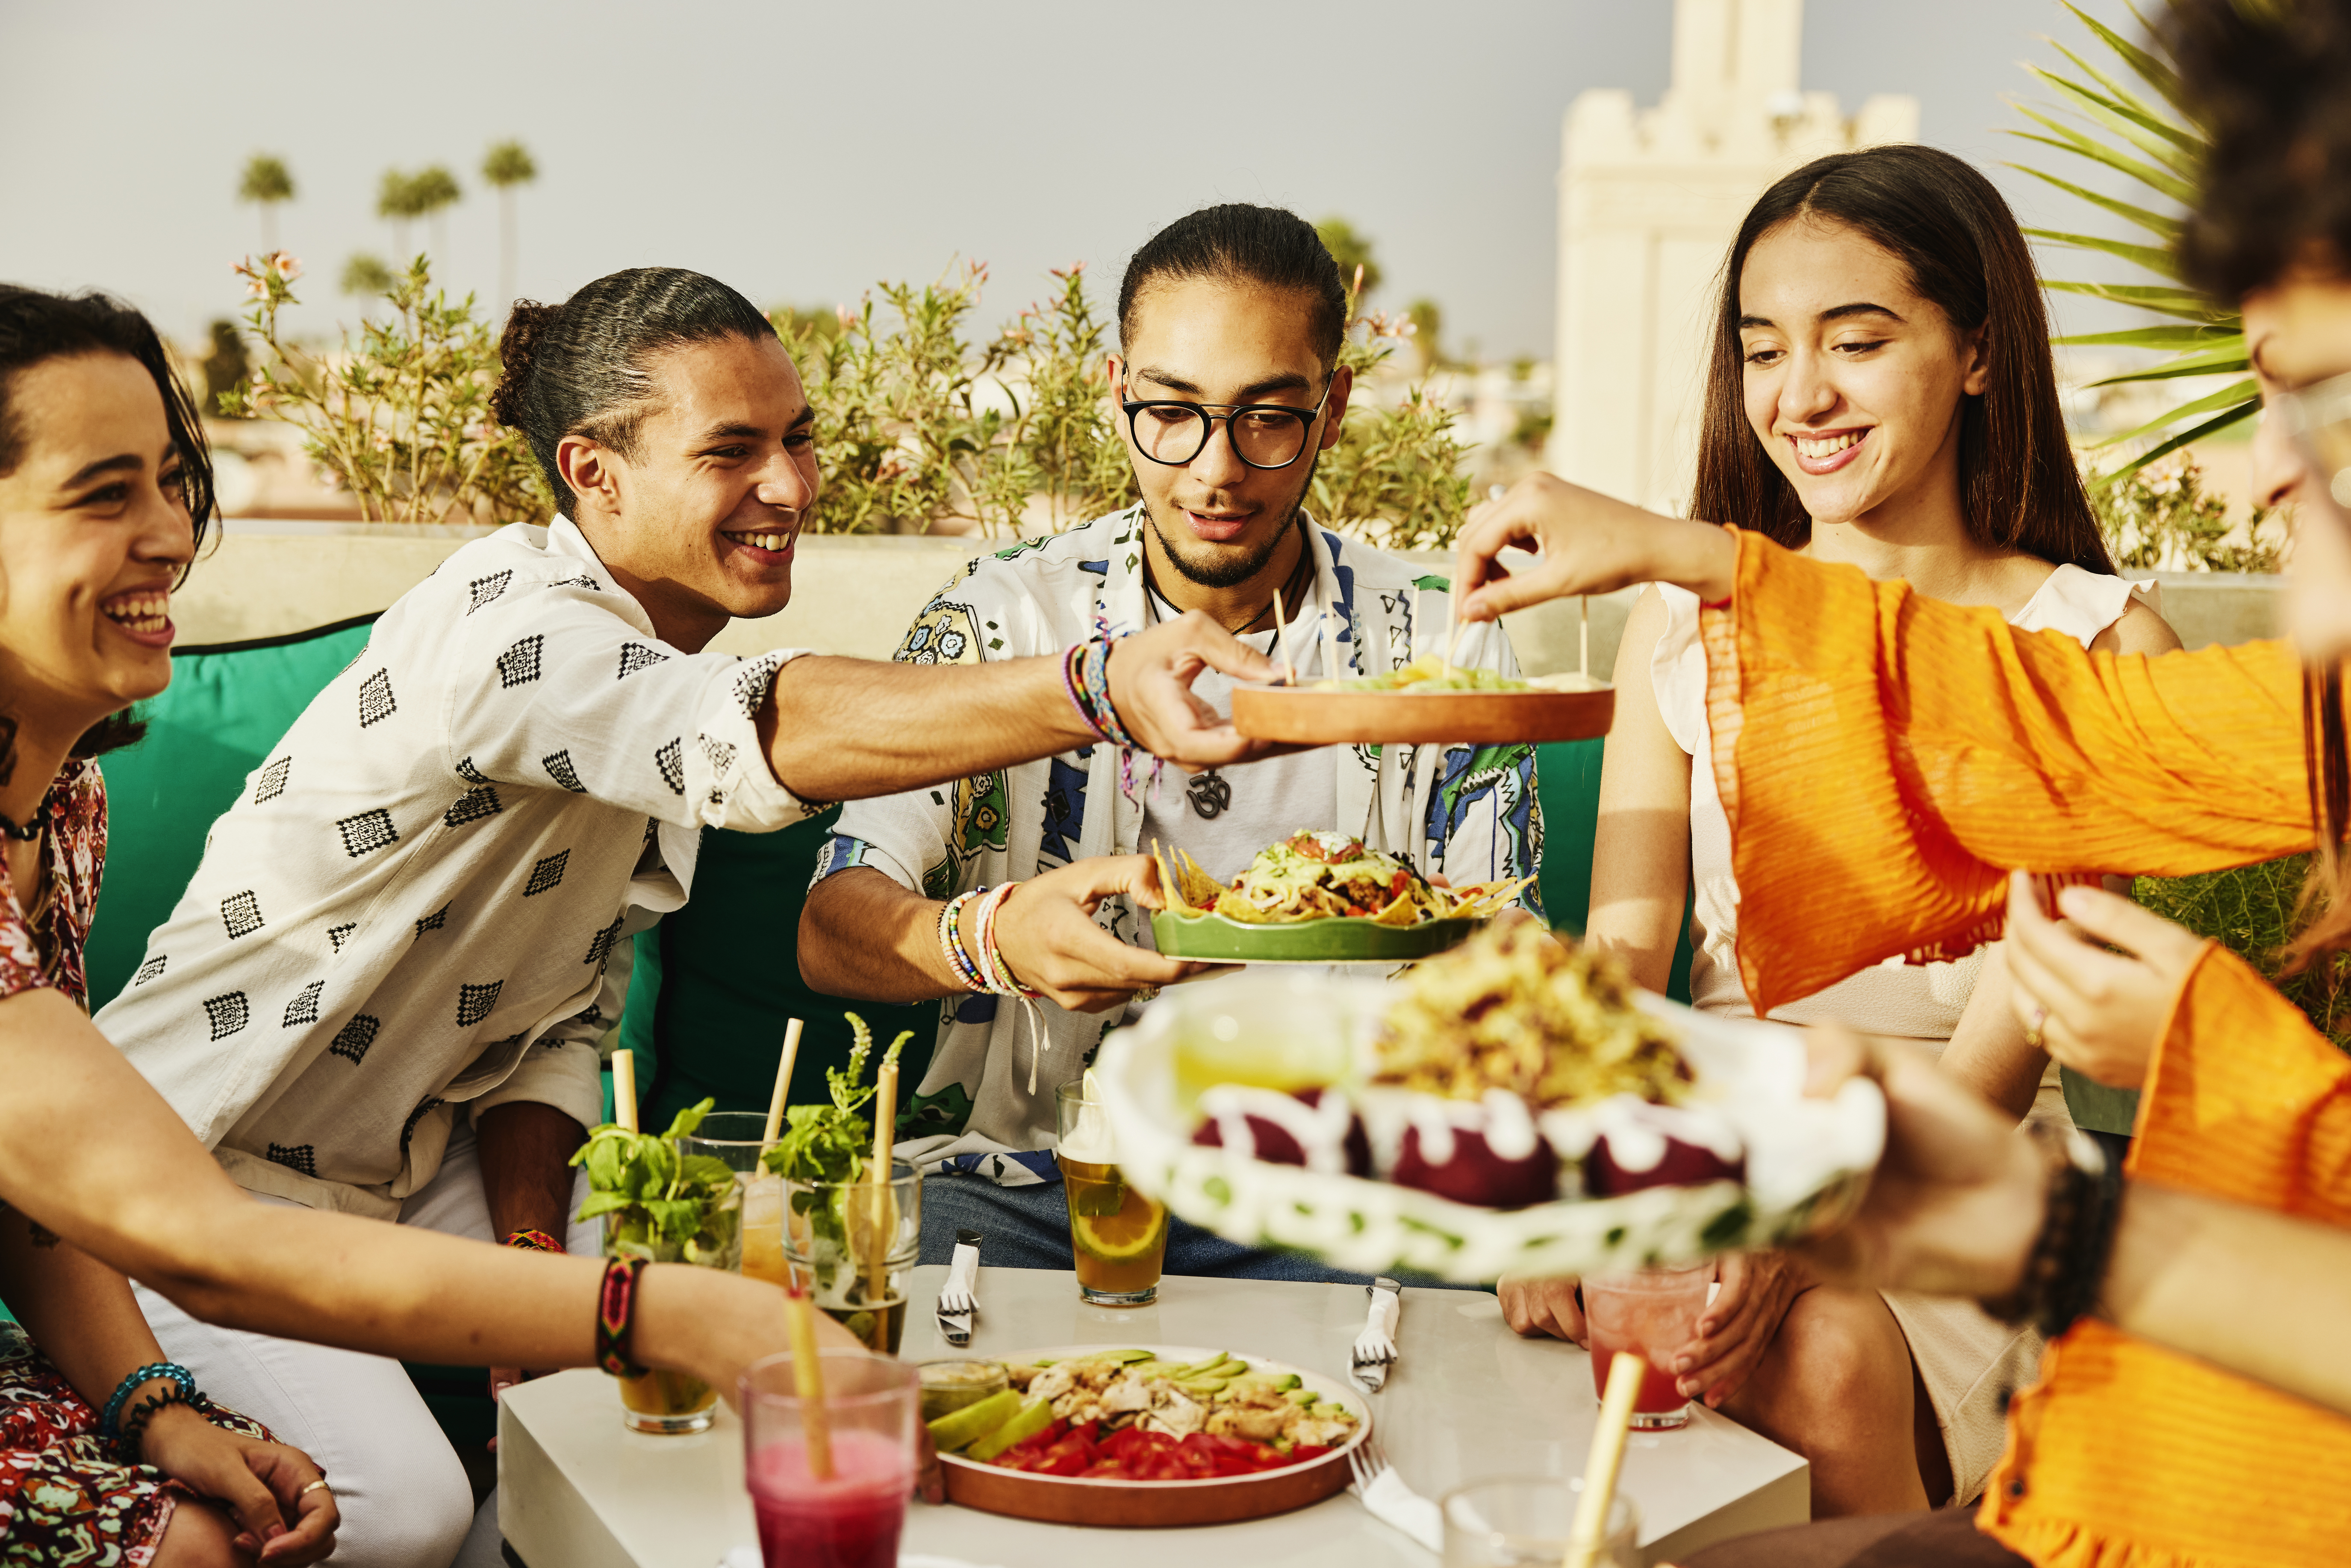 Des amis font la fête dans un restaurant | Source : Getty Images